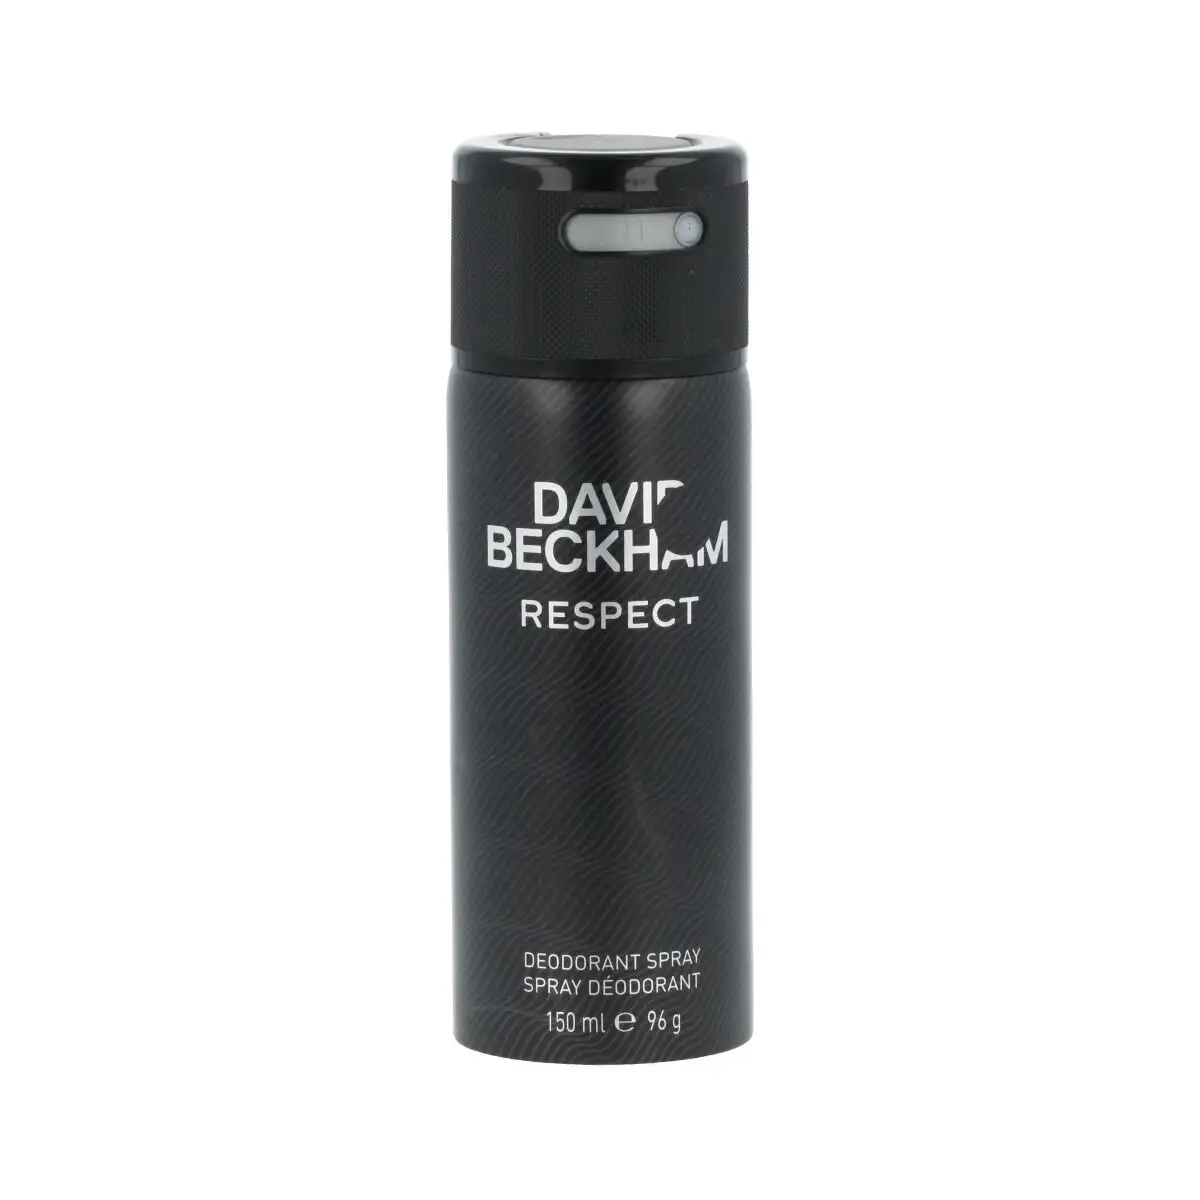 Spray deodorant david beckham respect 150 ml_8947. DIAYTAR SENEGAL - L'Art de Vivre le Shopping Authentique. Découvrez notre boutique en ligne et trouvez des produits qui incarnent la passion et le savoir-faire du Sénégal.